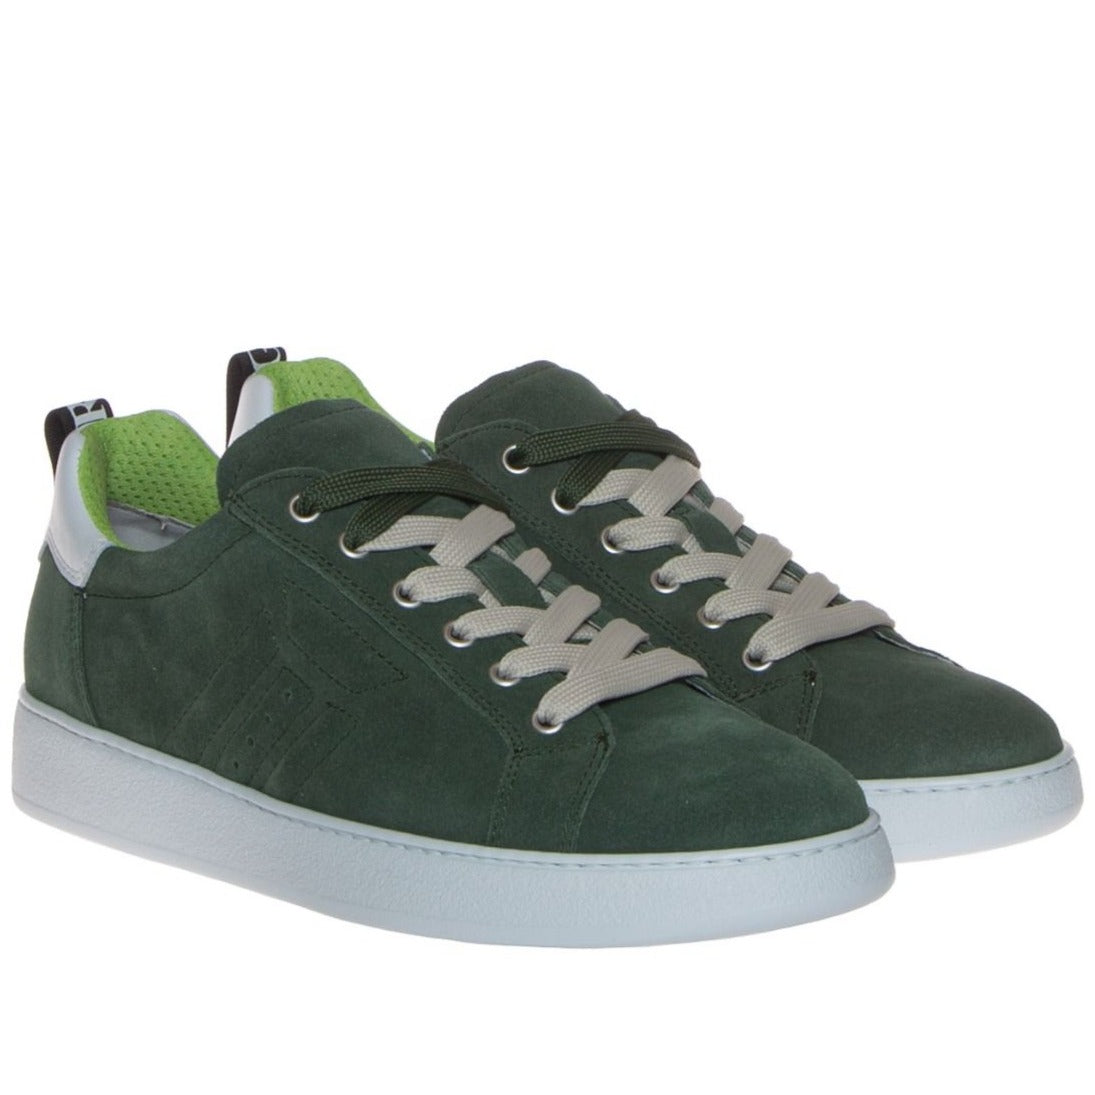 Sneakers NeroGiardini man green leather